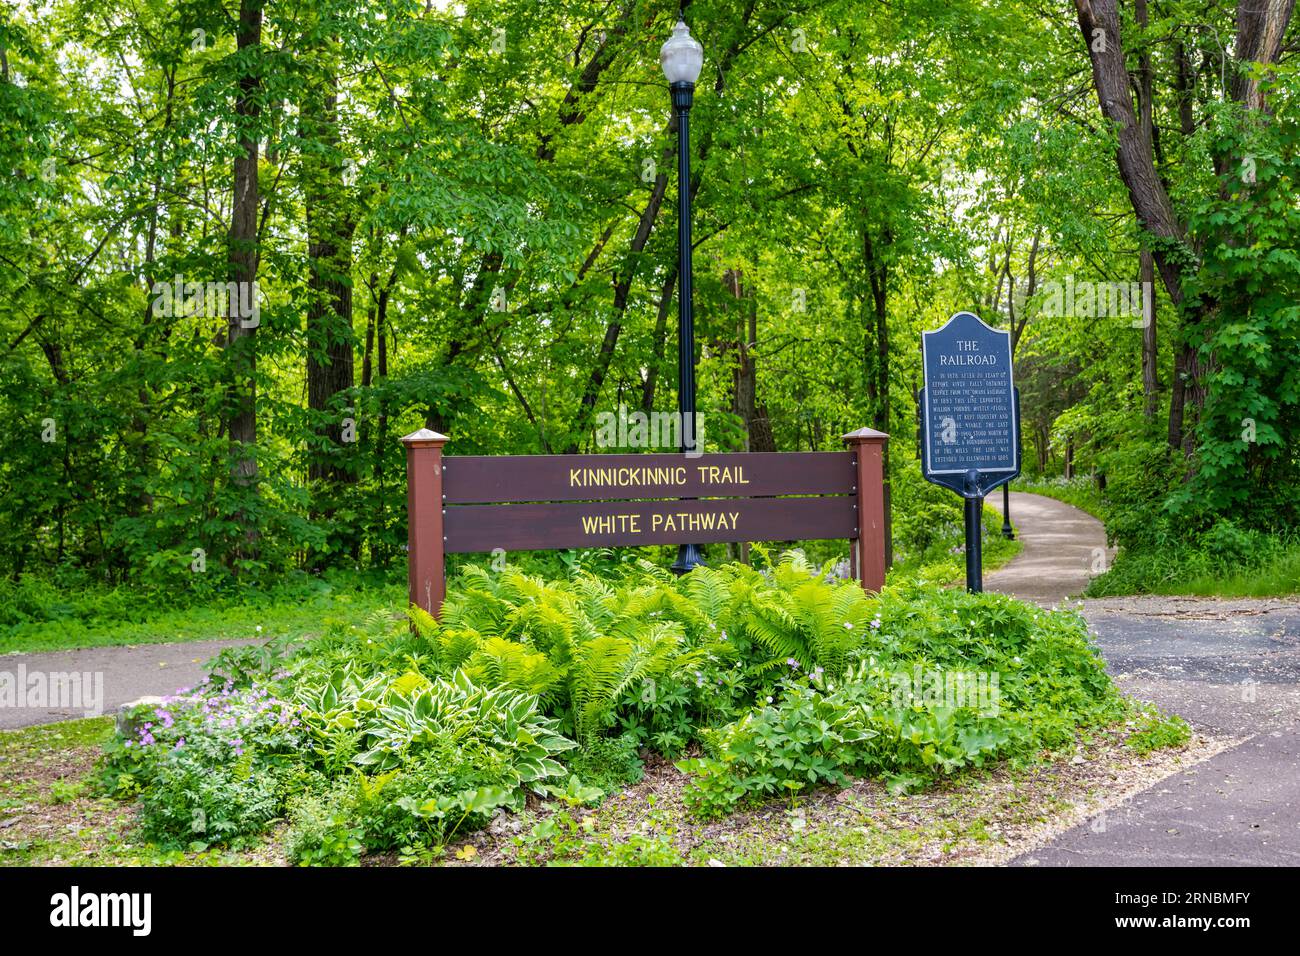 A description board for the trail in River Falls, Wisconsin Stock Photo